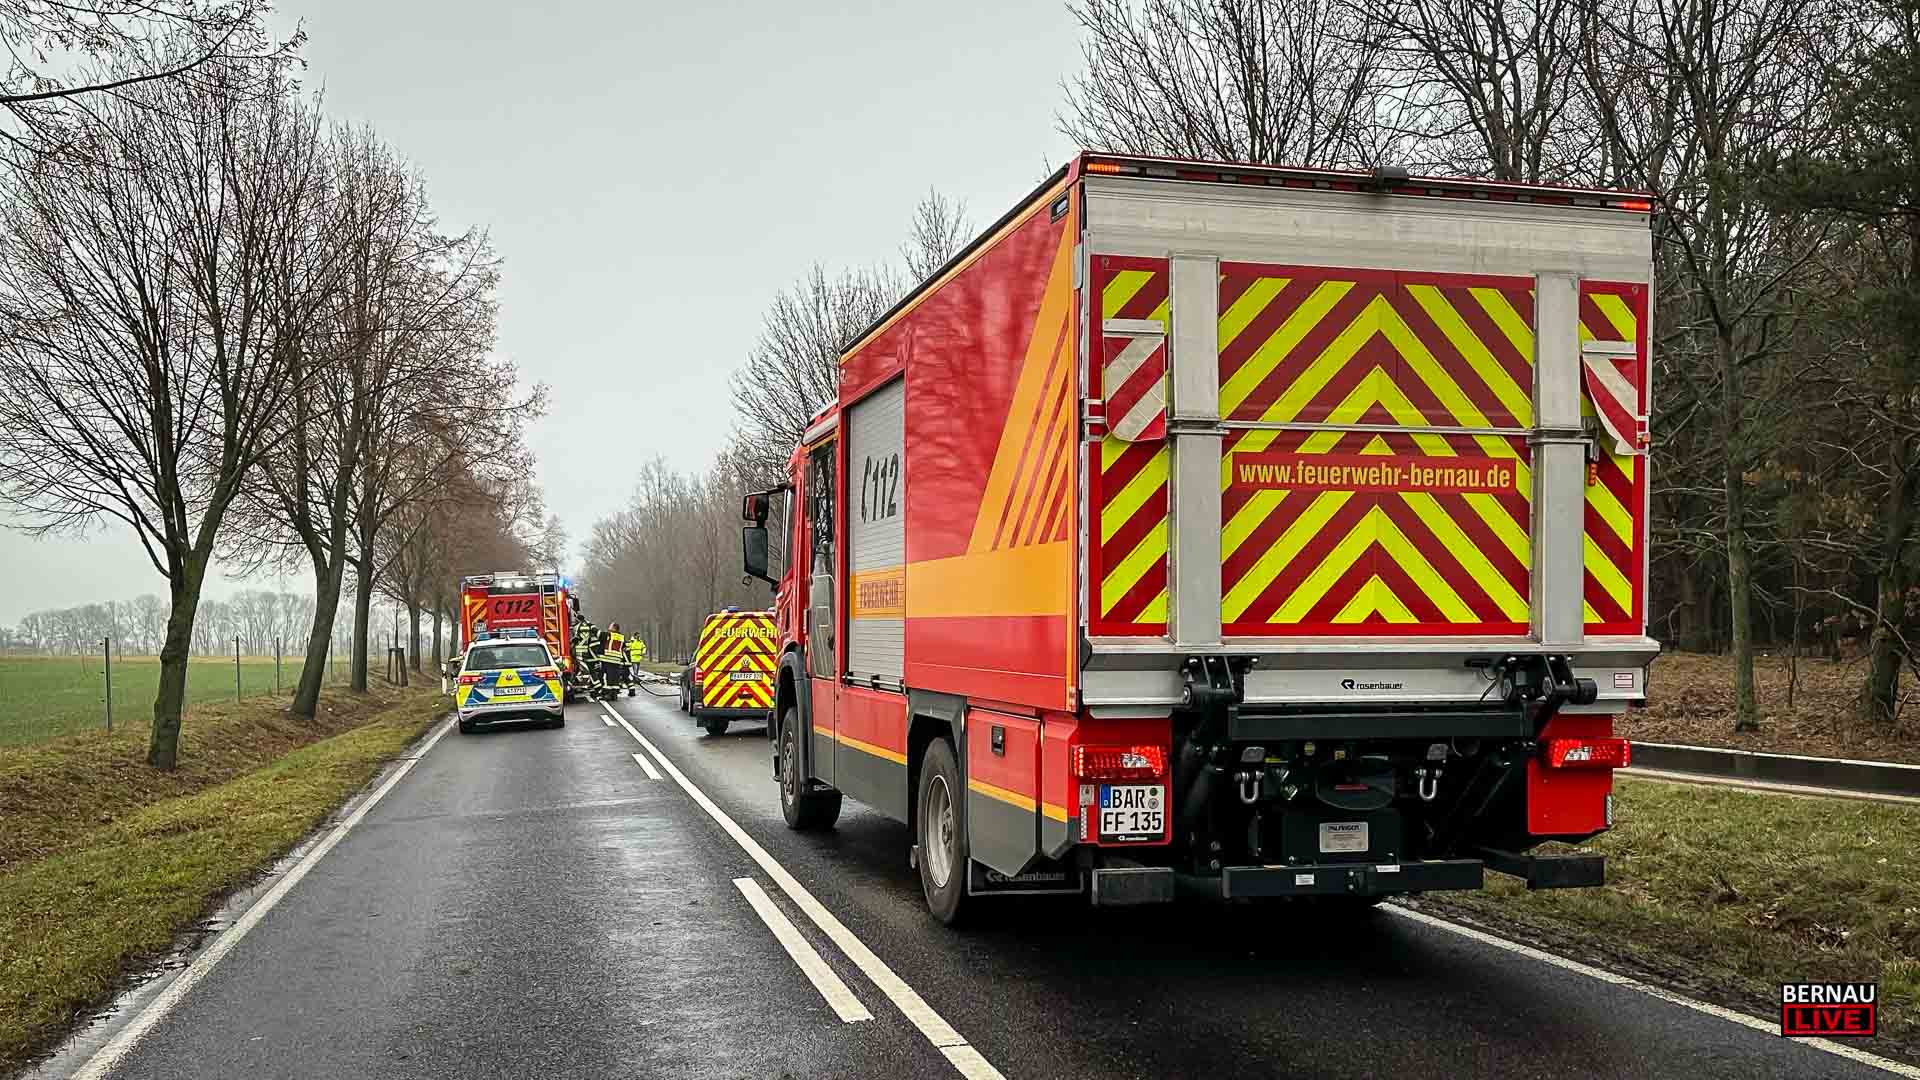 Weitere Person nach schwerem Verkehrsunfall in Bernau verstorben